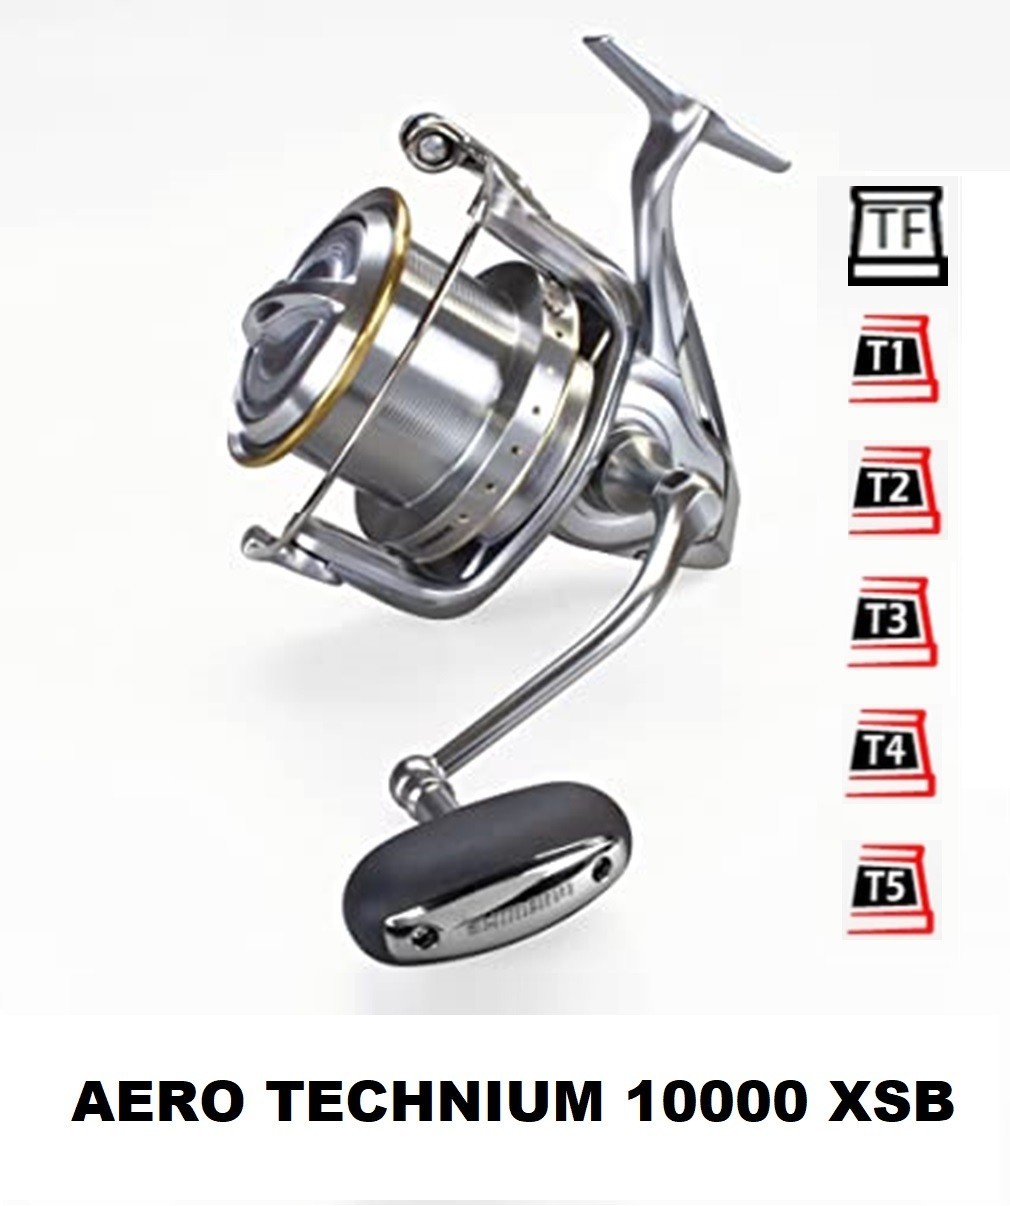 Bobines et accessoires compatibles avec moulinet shimano aero technium xsc